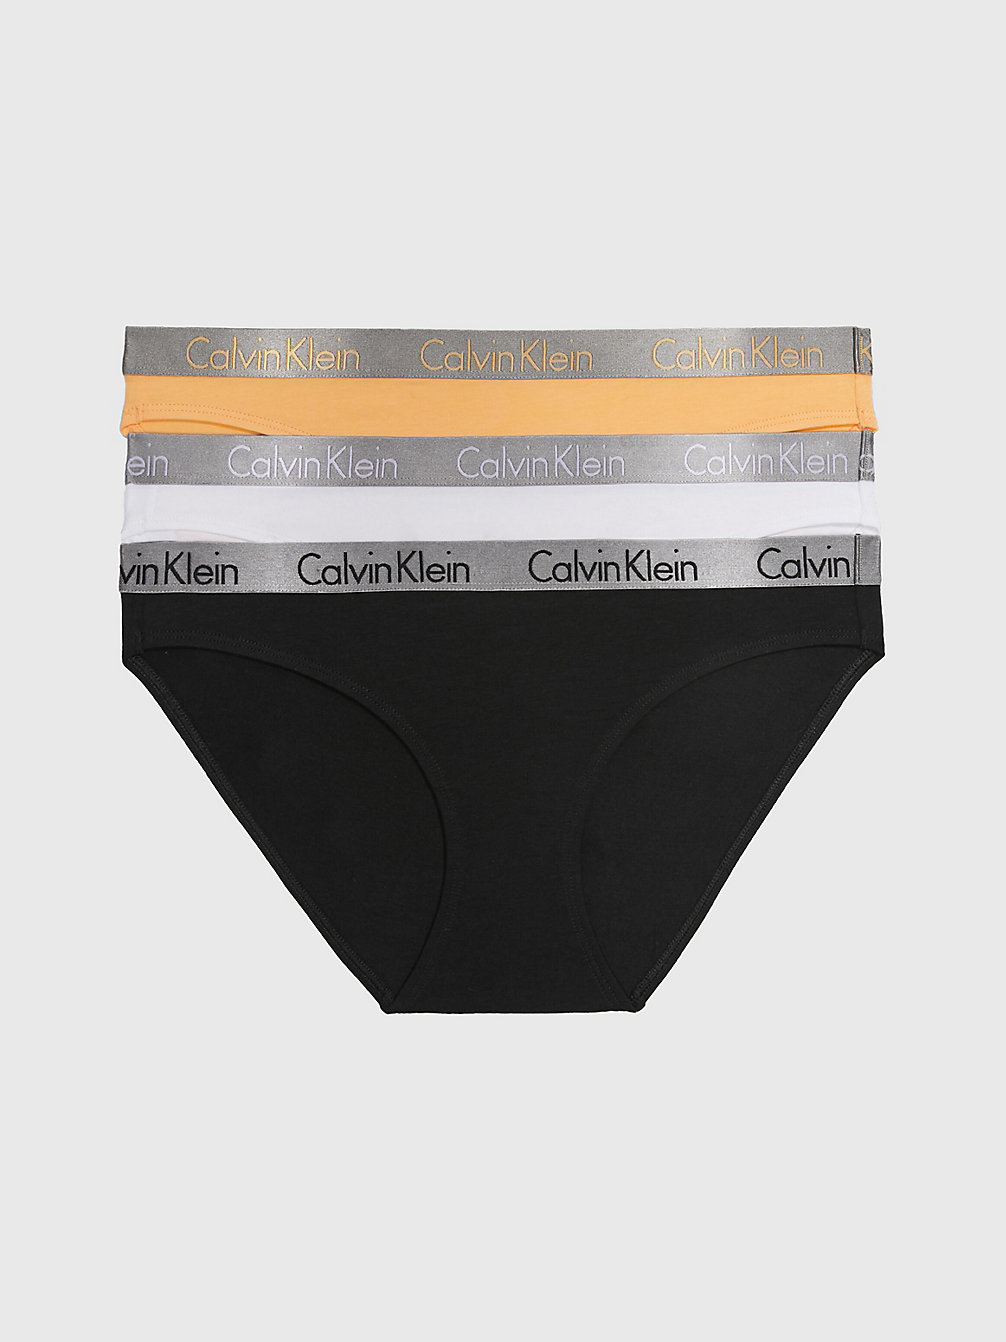 BLACK/WHITE/ORANGE 3 Pack Bikini Briefs - Radiant Cotton undefined women Calvin Klein